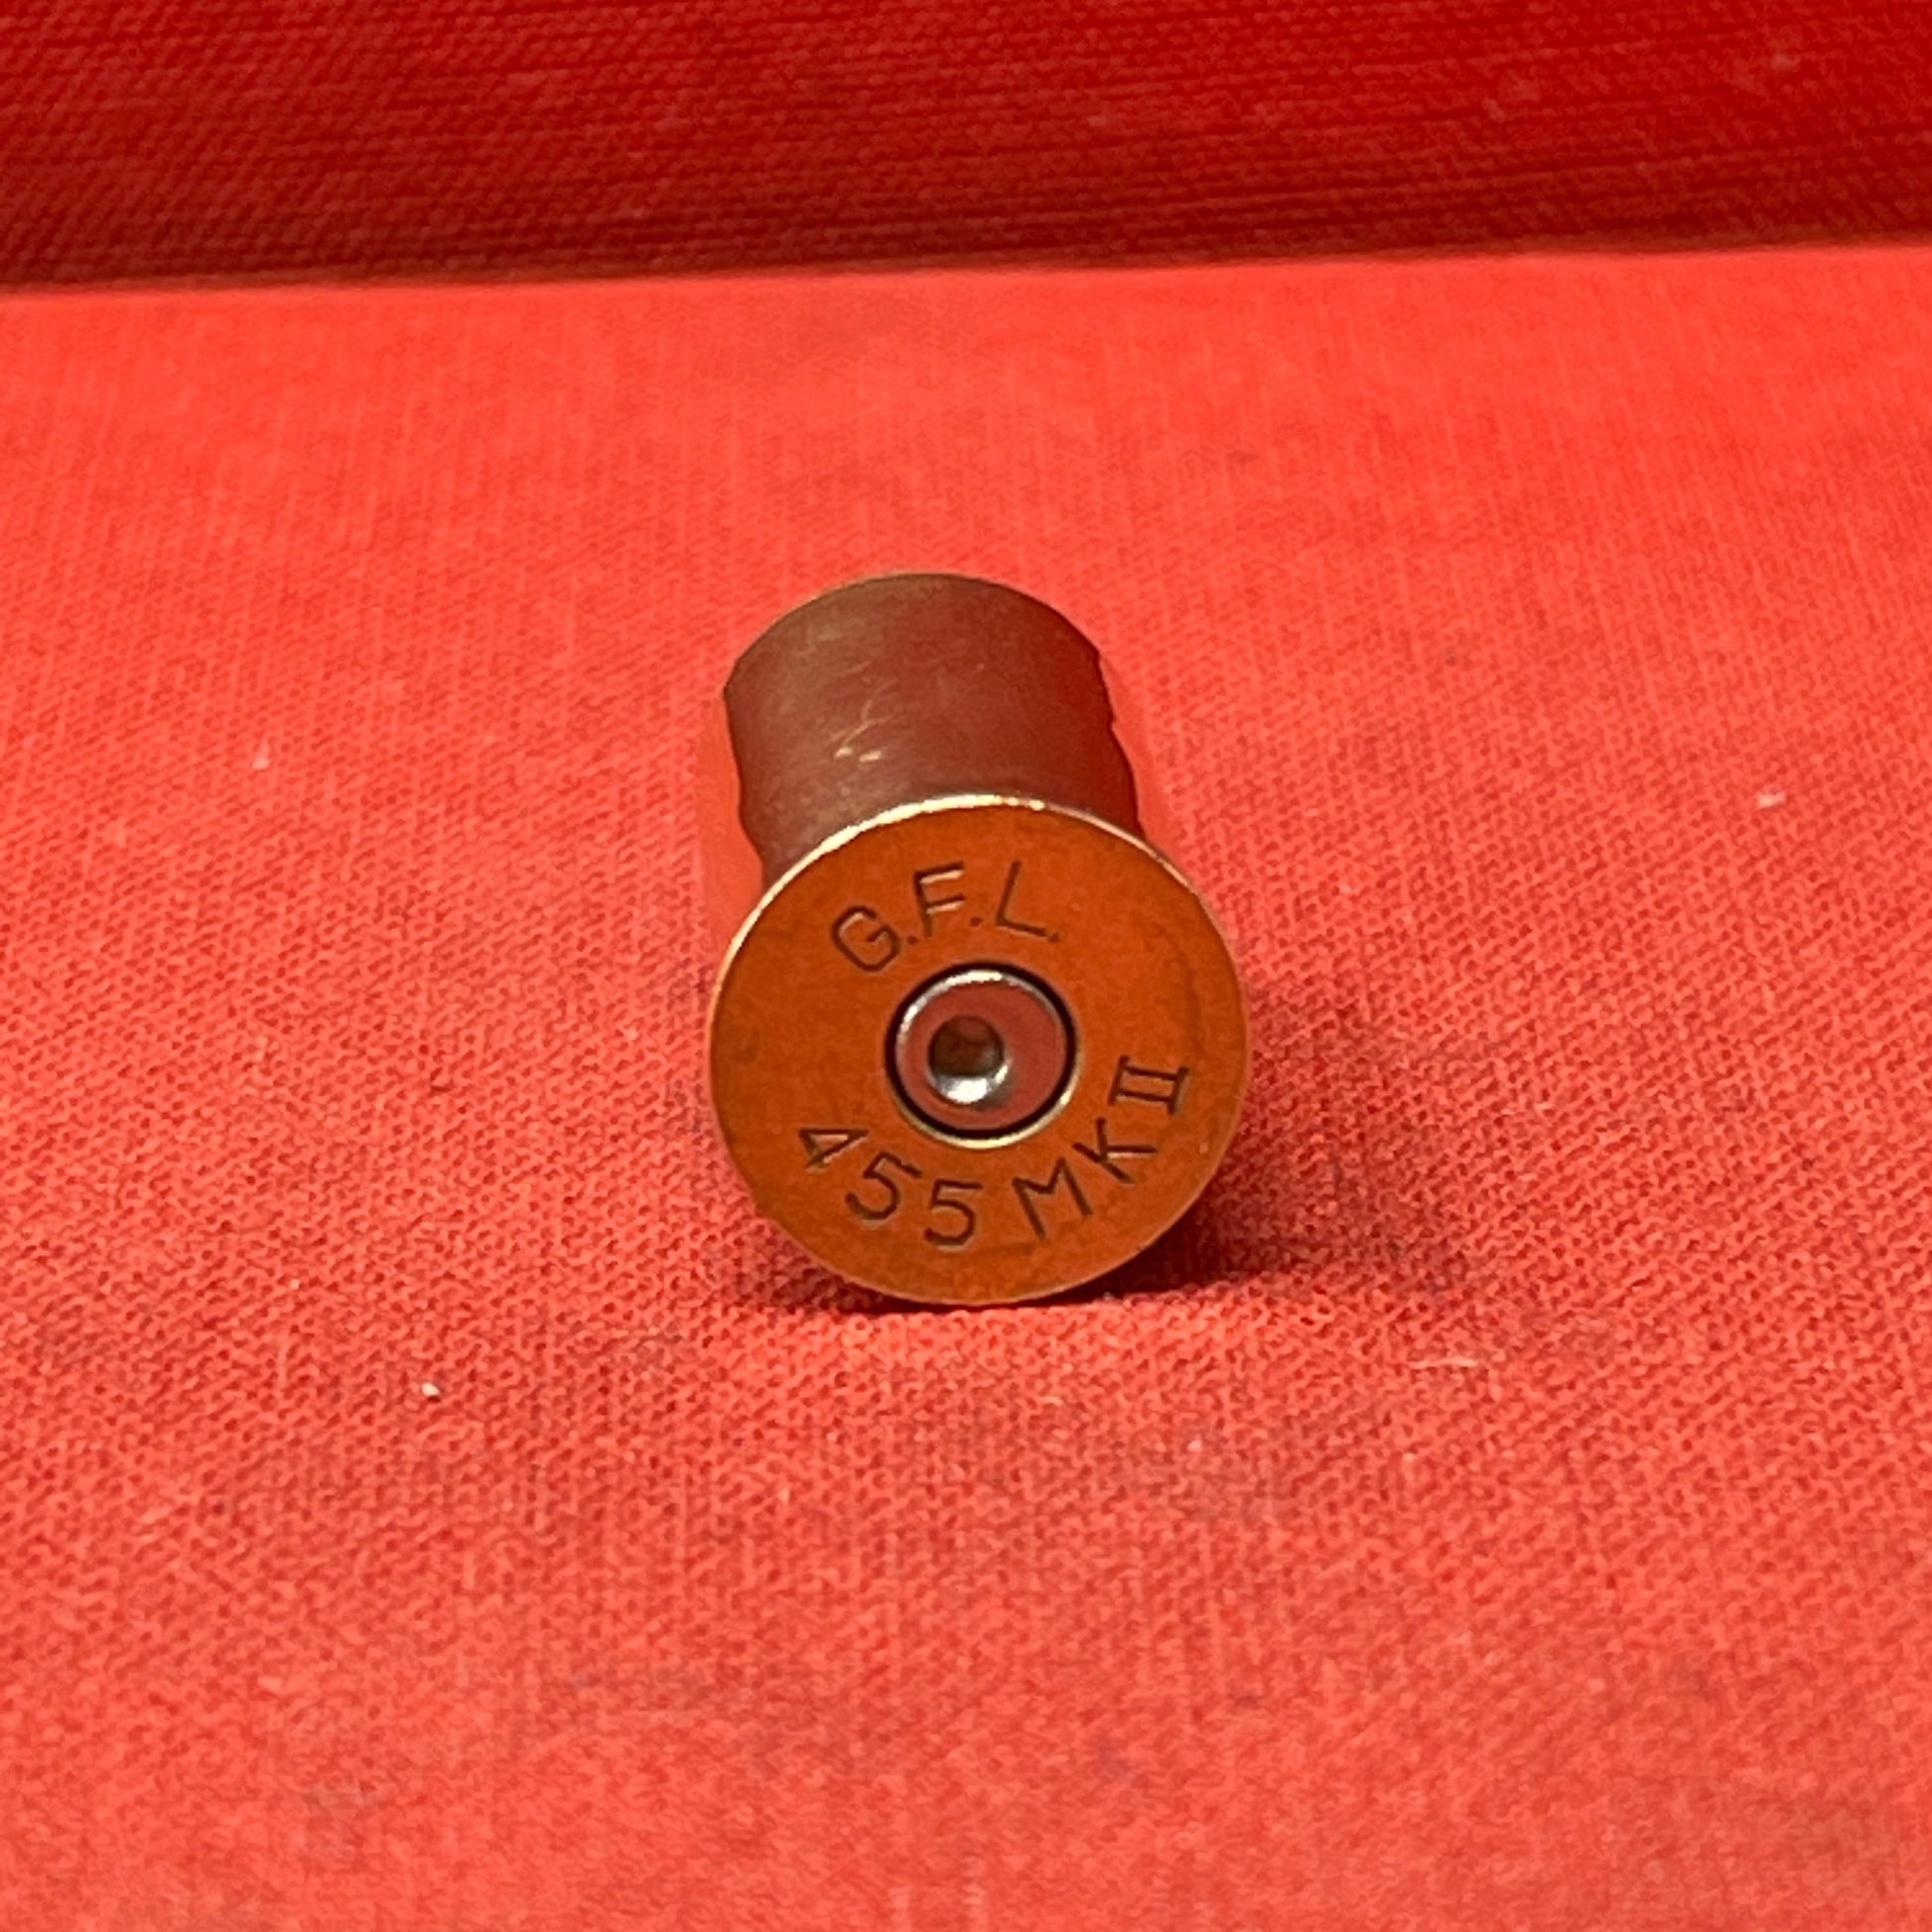 British .455 MKII G.F.L Cartridge